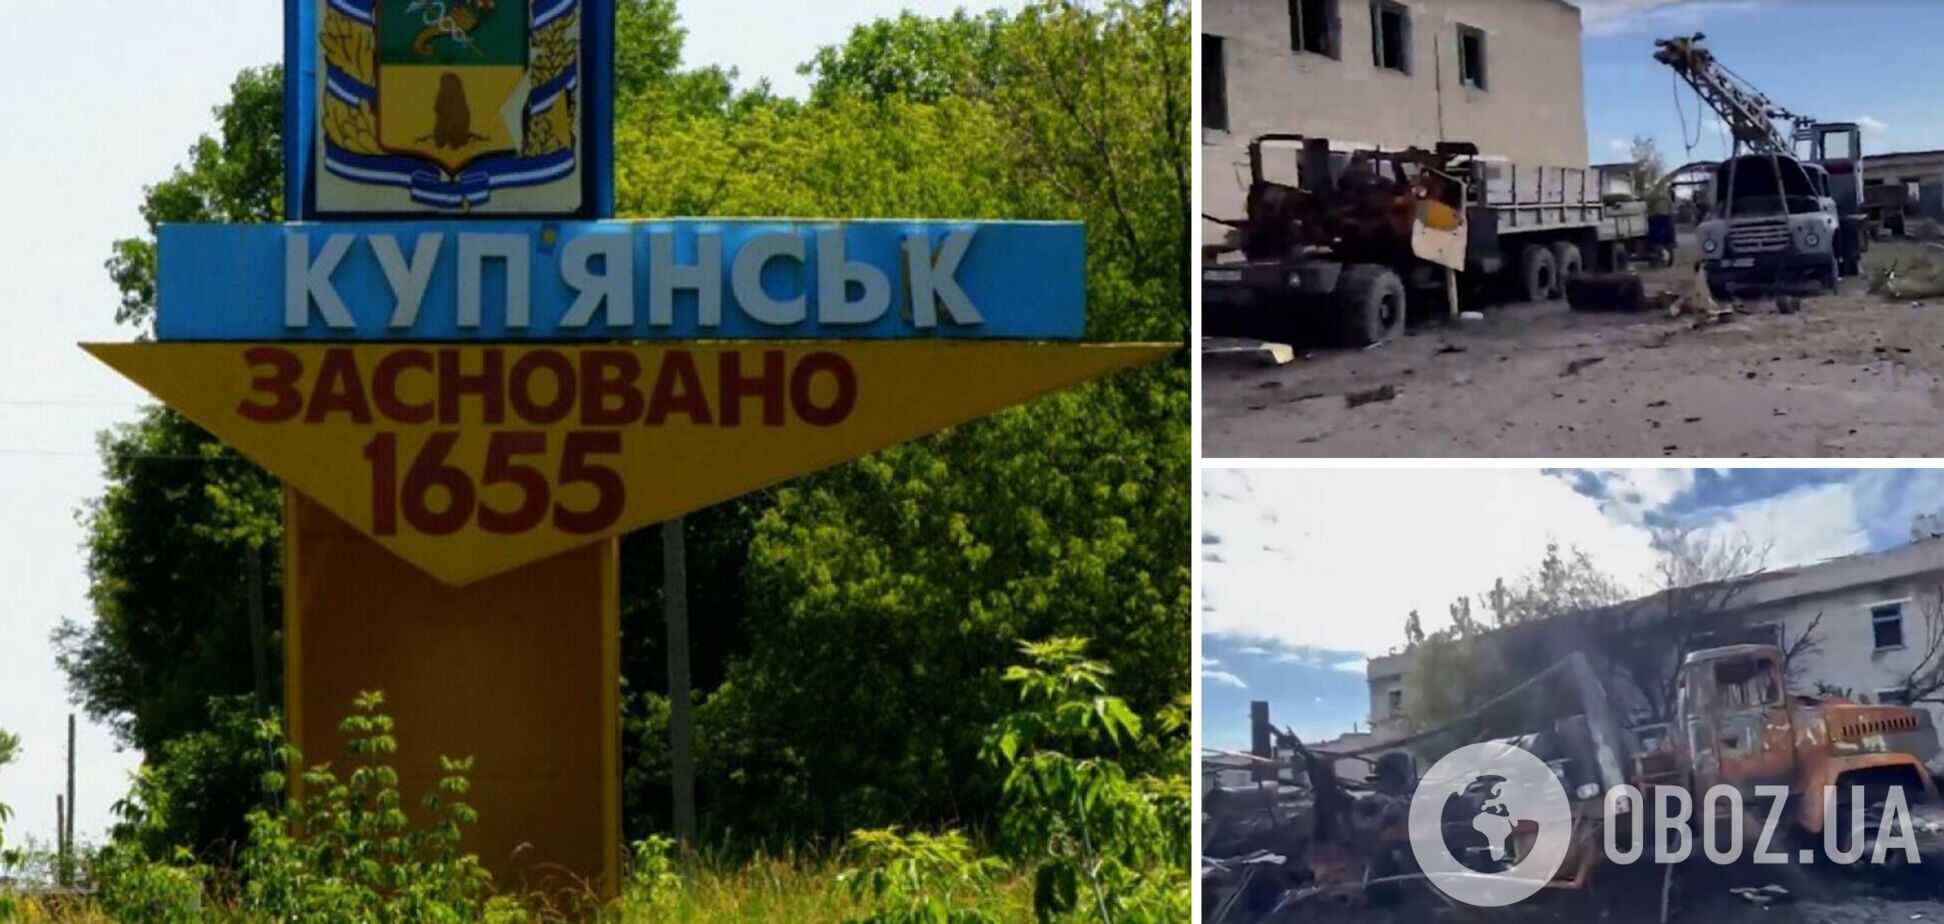 ВСУ 'демилитаризовали' командный пункт российского спецназа: видео из бывшего логова захватчиков